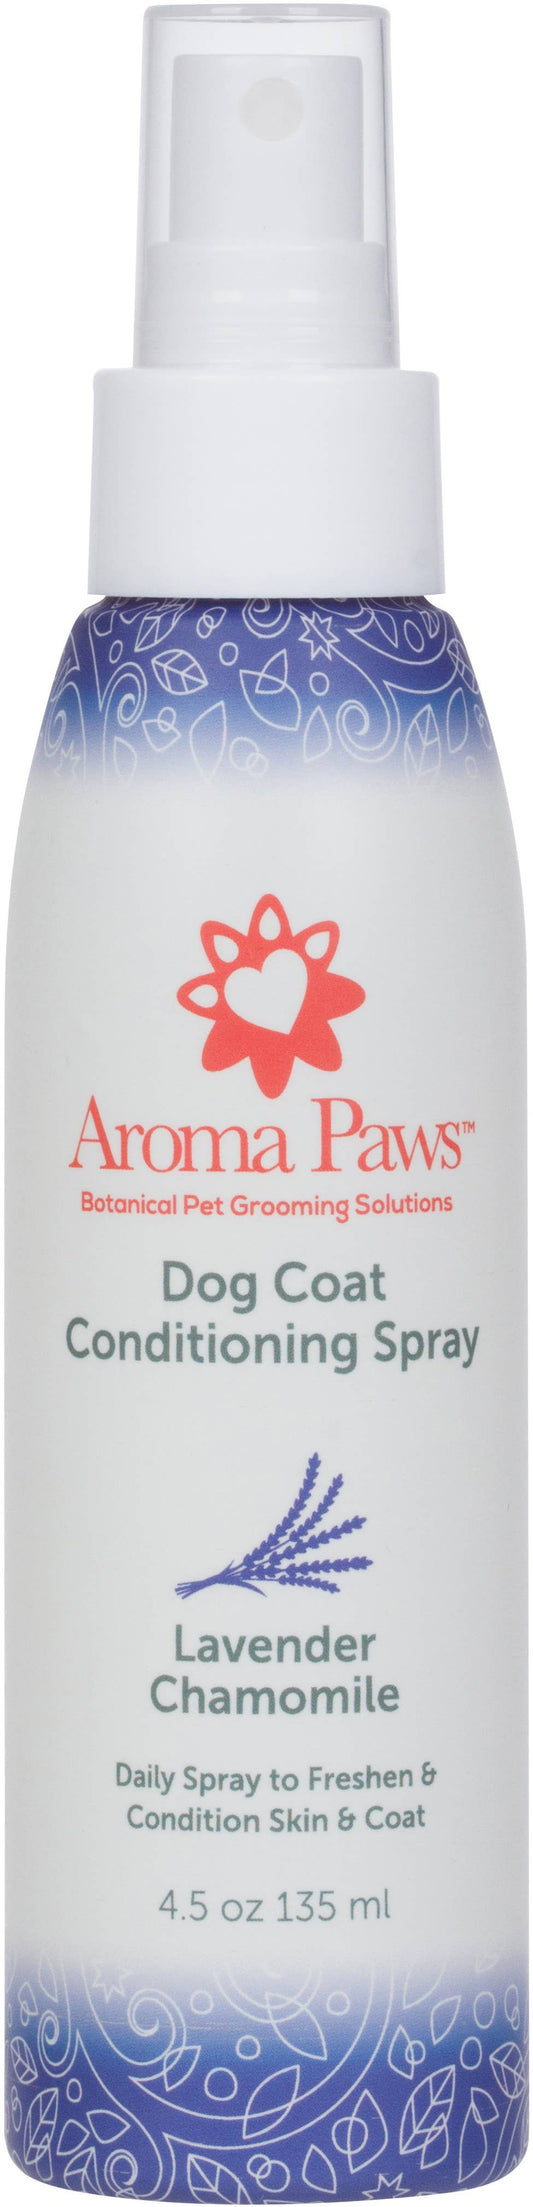 4.5 Oz. Dog Coat Spray Lavender Chamomile